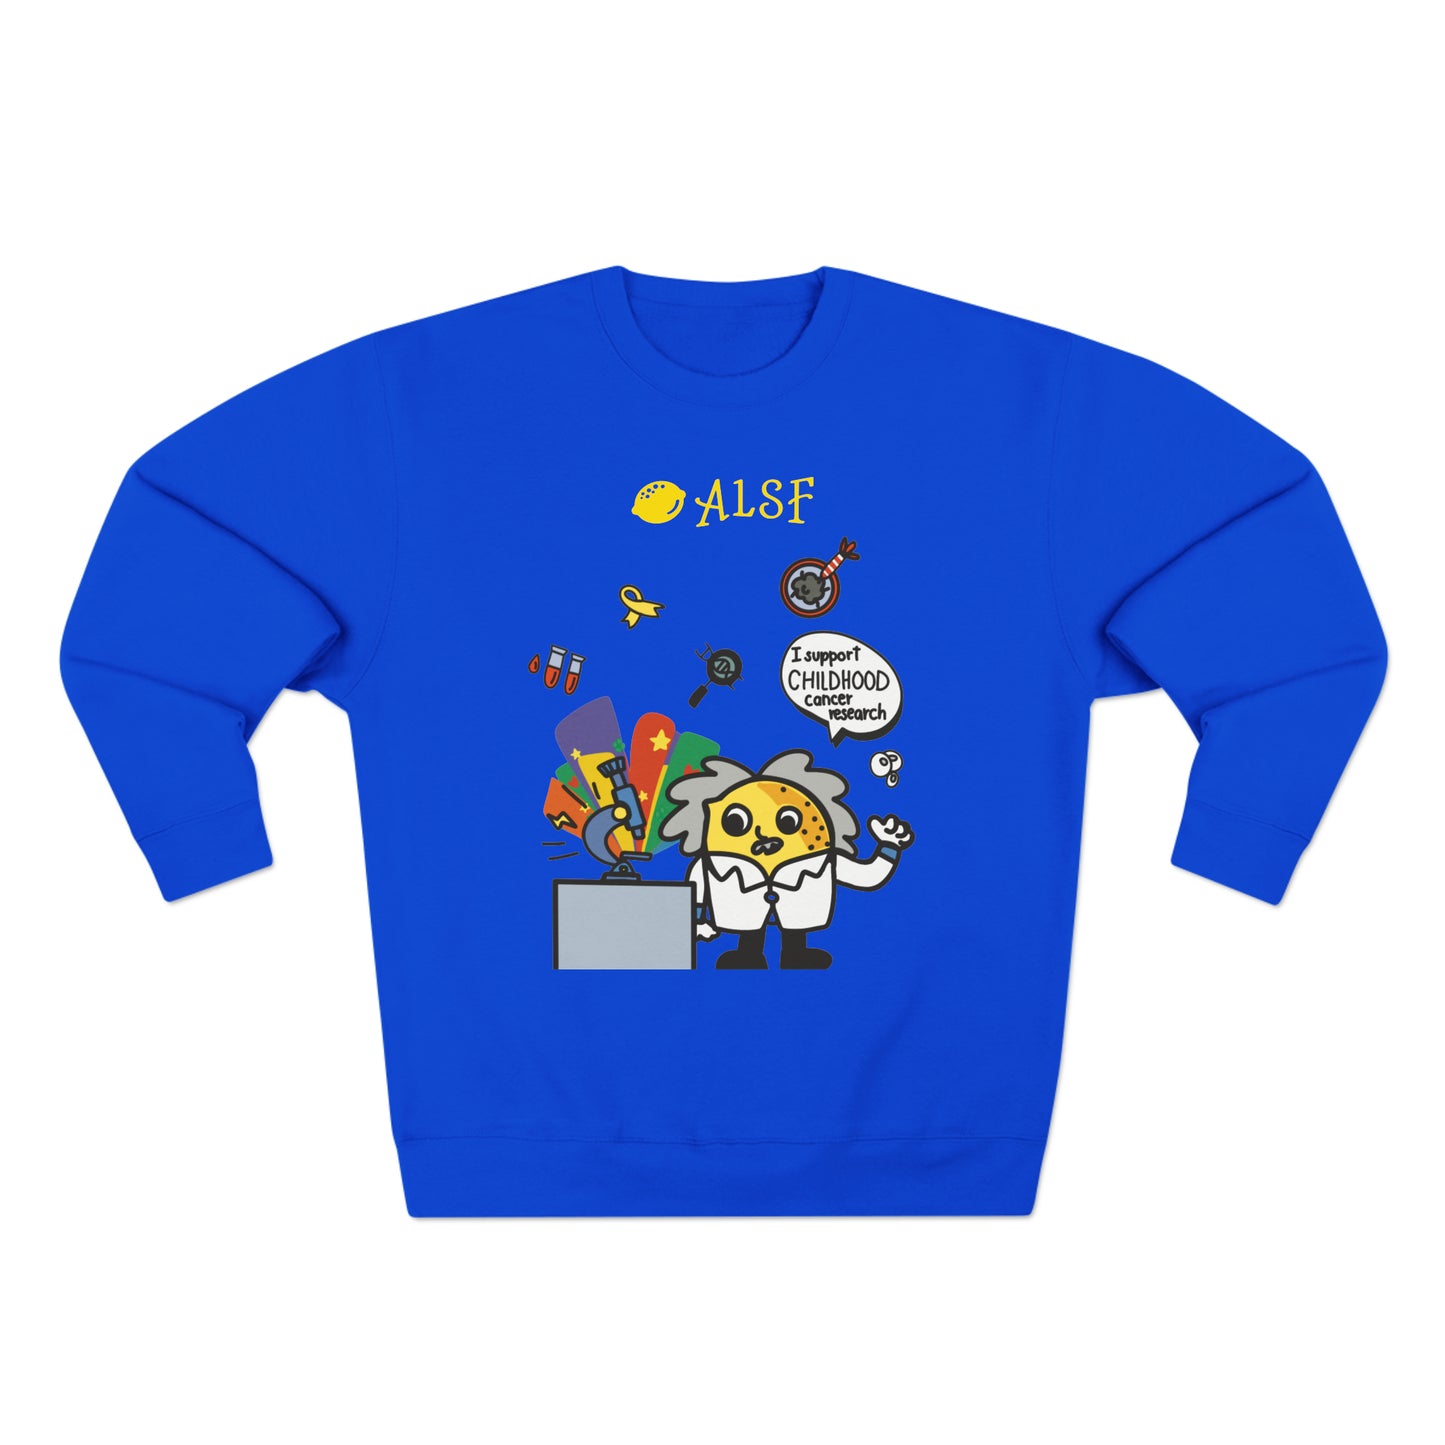 Cancer Research Premium Sweatshirt ALSF